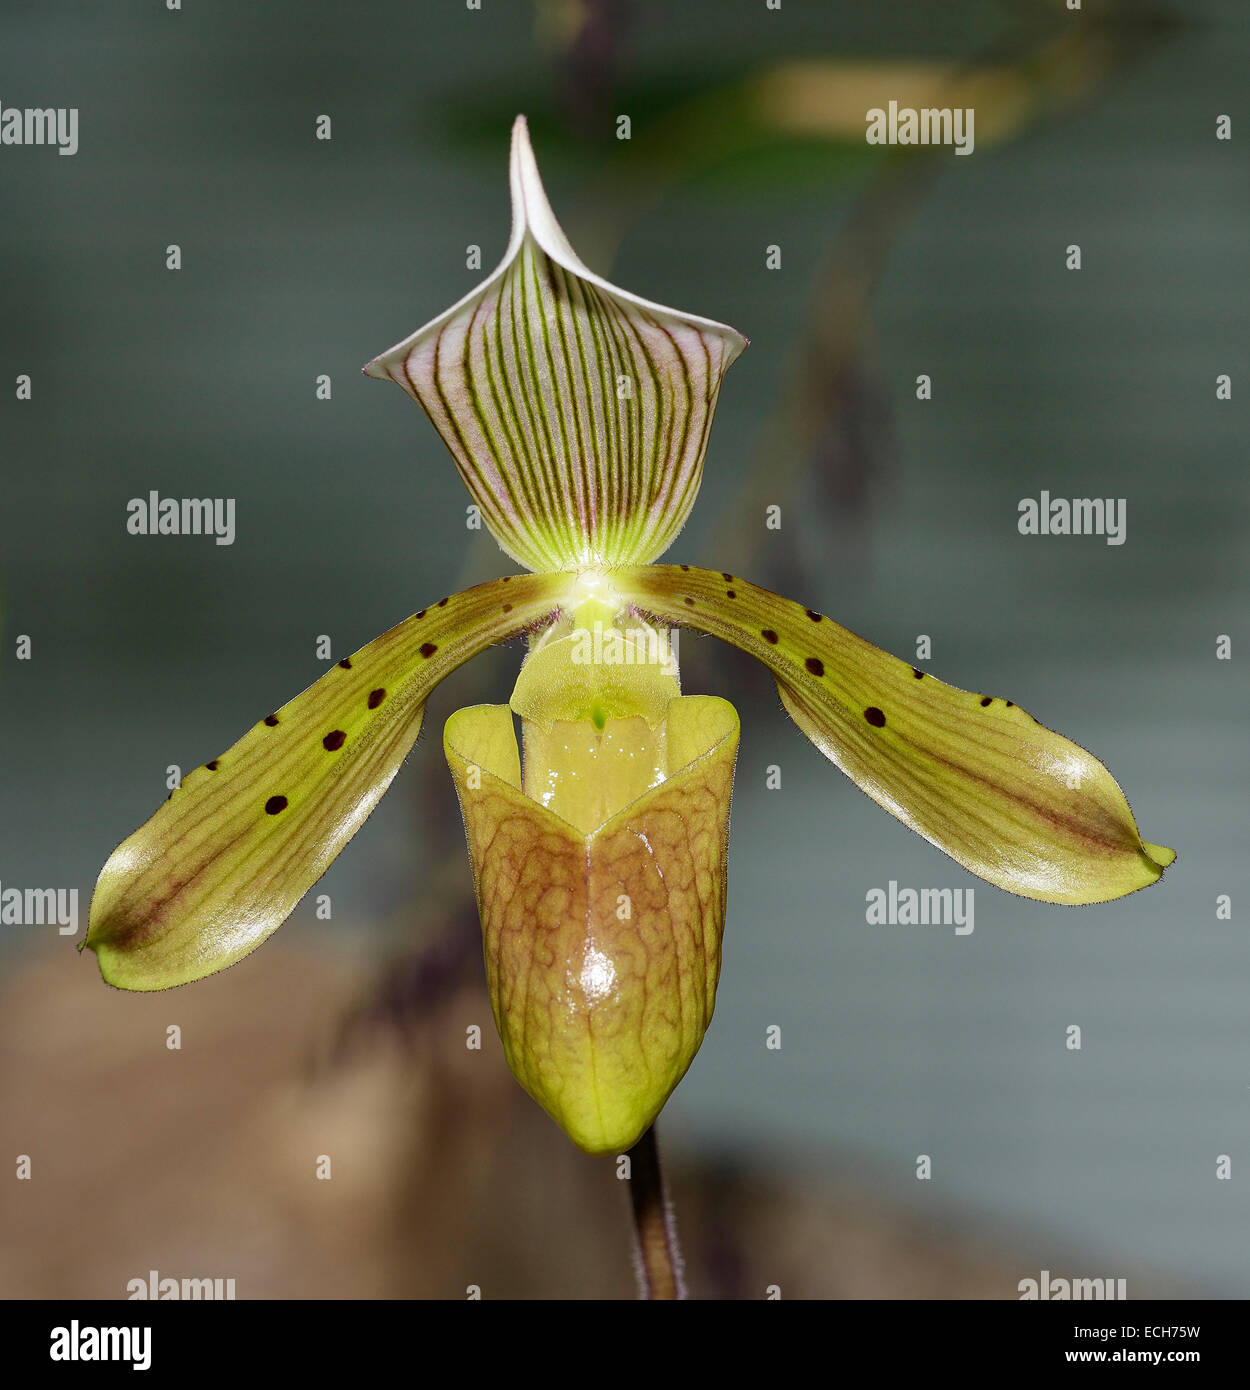 Bald Paphiopedilum - Paphiopedilum tonsum Slipper Orchid from Borneo & Sumatra Stock Photo